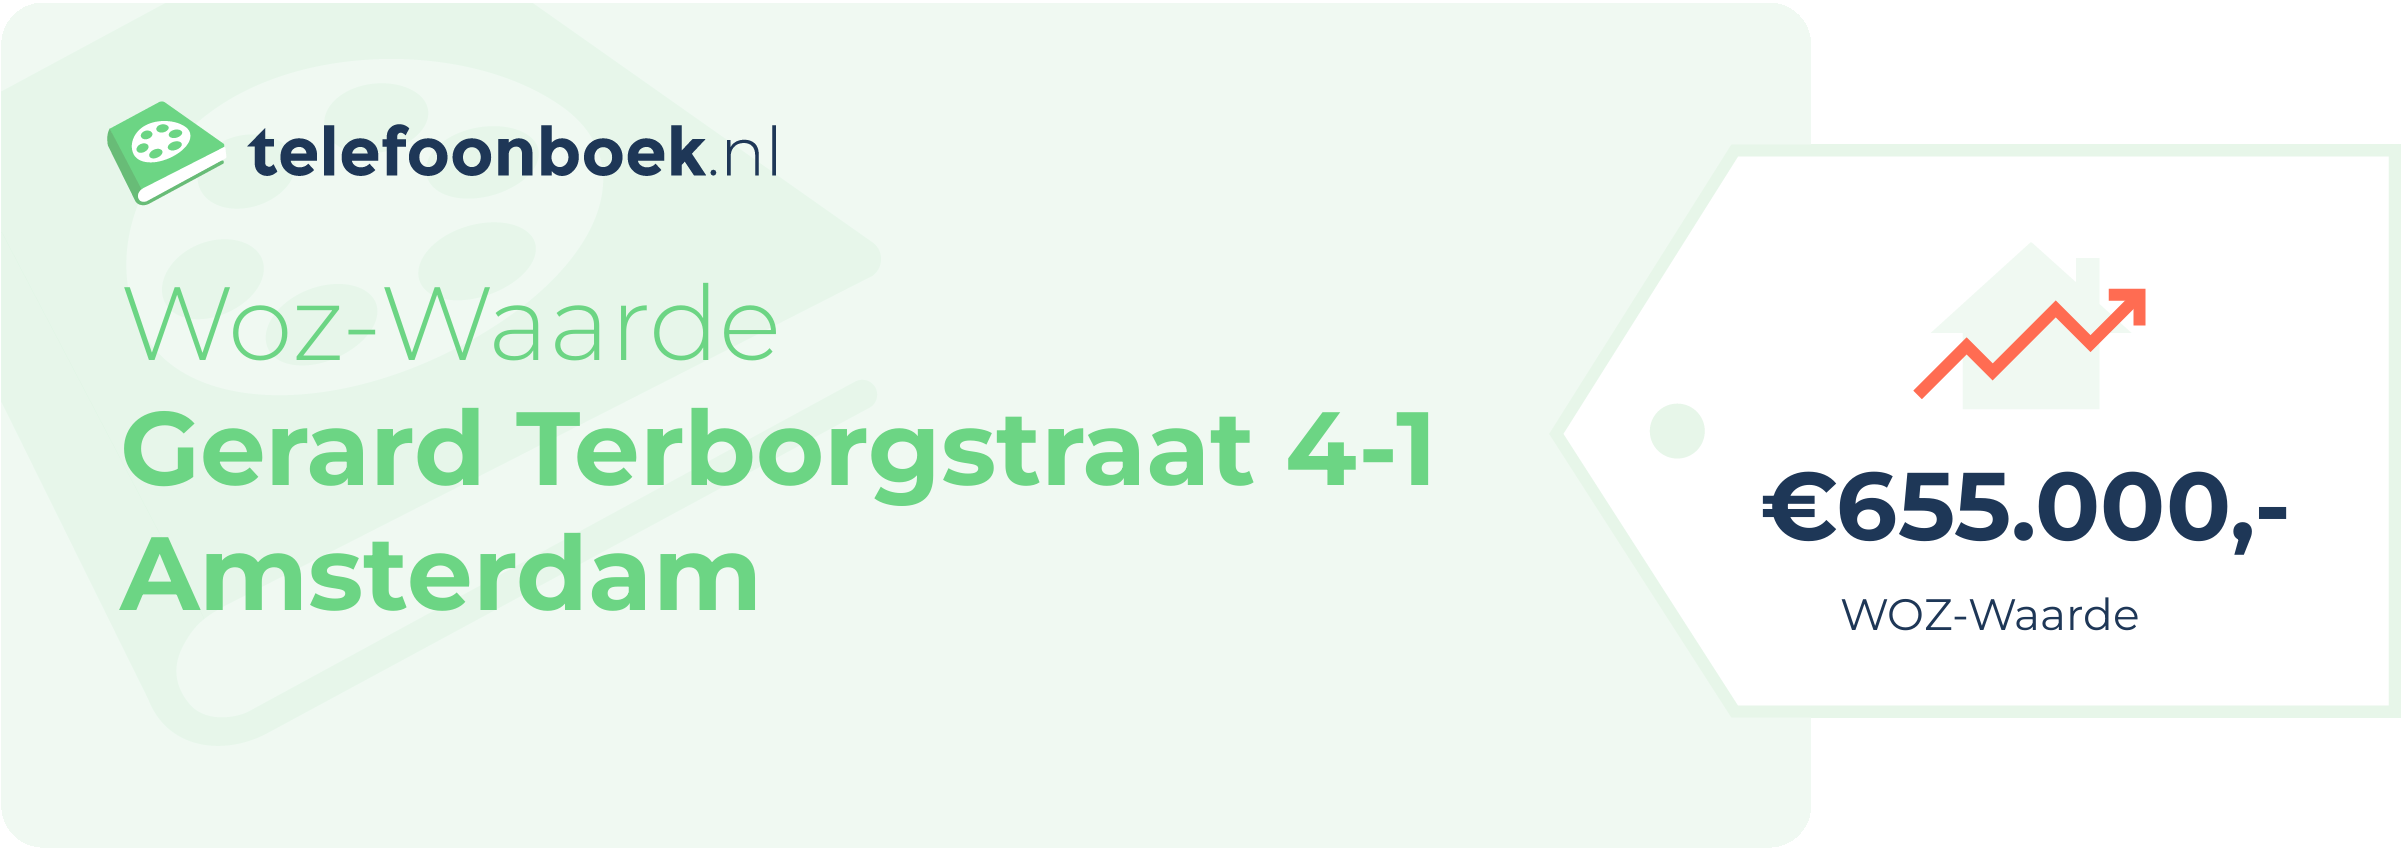 WOZ-waarde Gerard Terborgstraat 4-1 Amsterdam